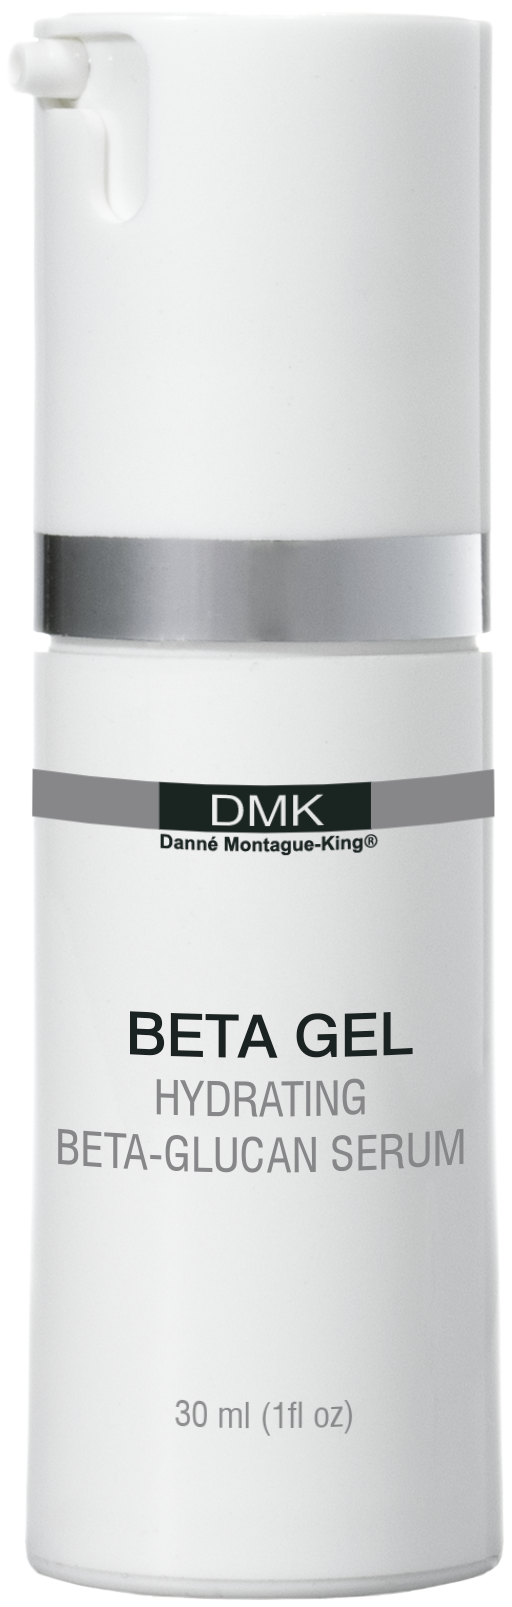 DMK Beta Gel - Satori Fiori Skin Care